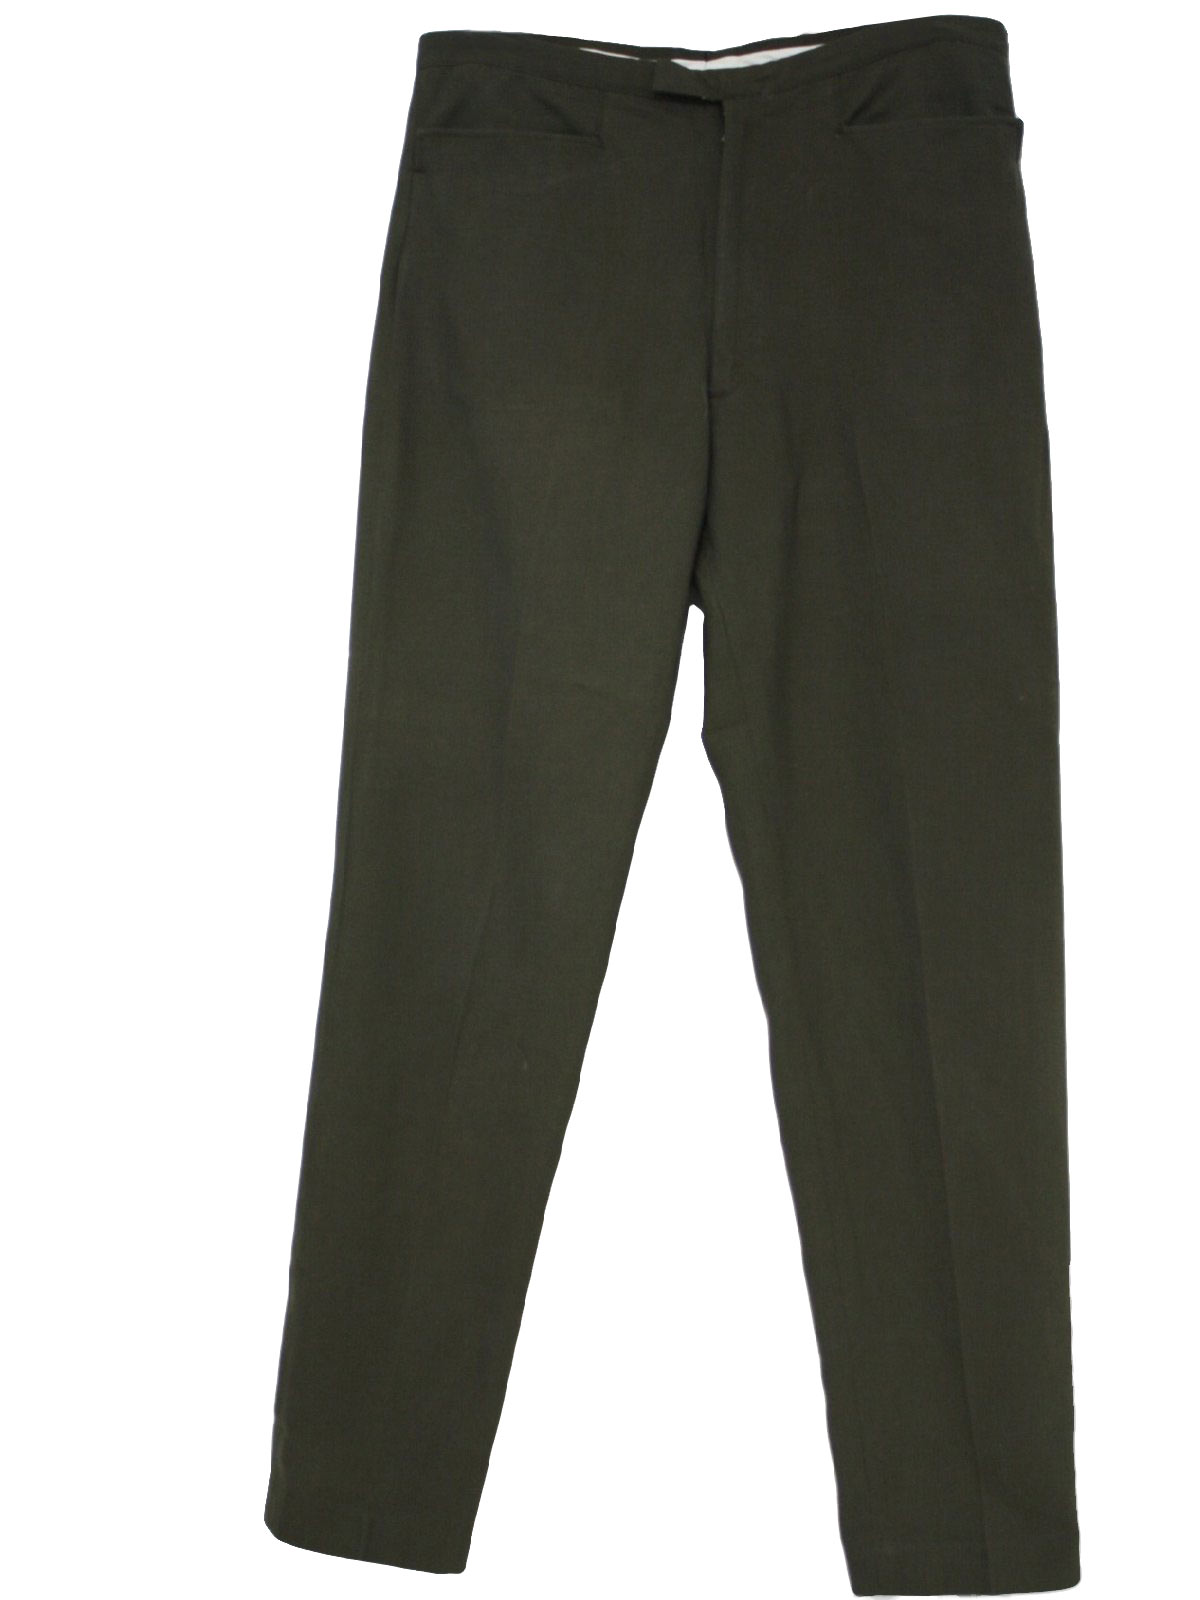 1960's Retro Pants: Early 60s -Harris Slacks- Mens olive green acrylic ...